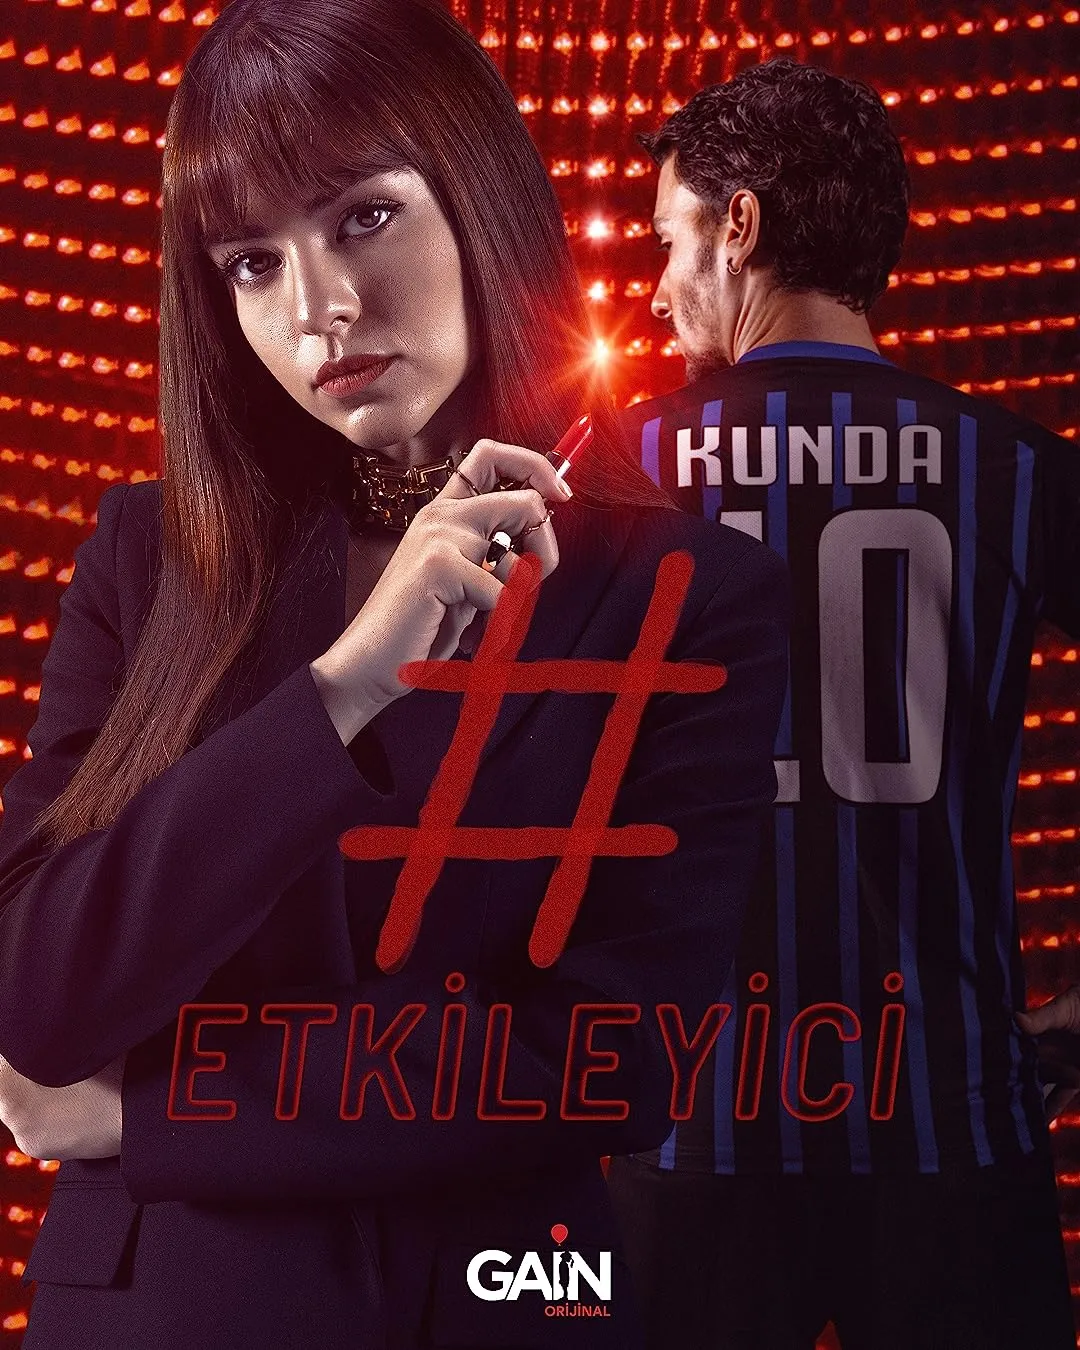 #Etkileyici | Influencer online subtitrat in romana